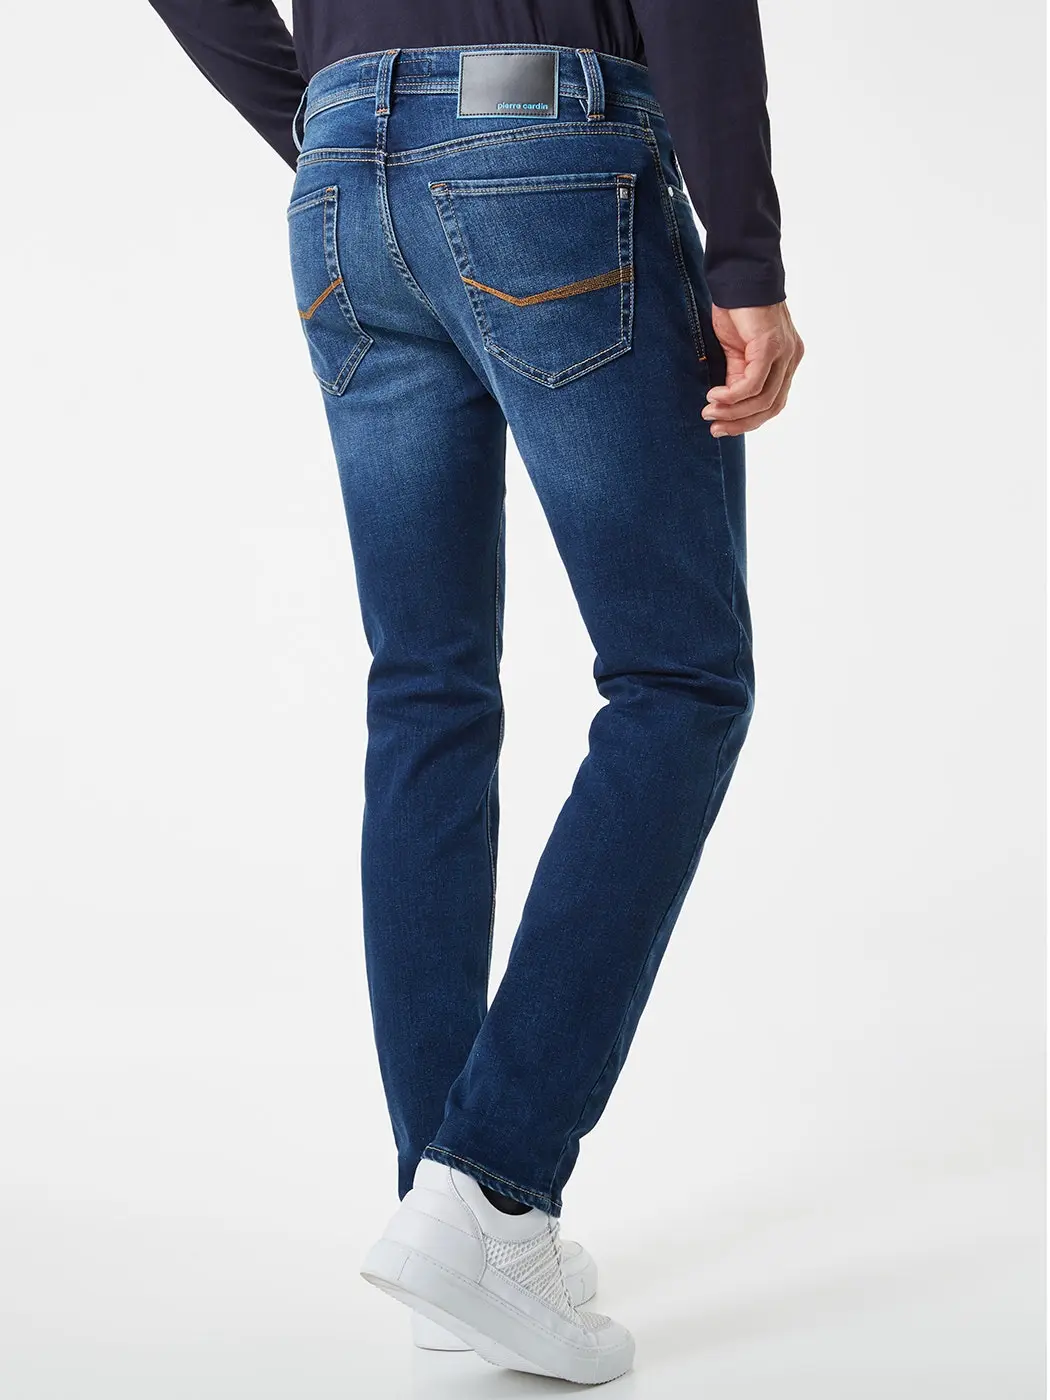 Betrokken halfgeleider Herdenkings pierre cardin heren jeans | Smit mode